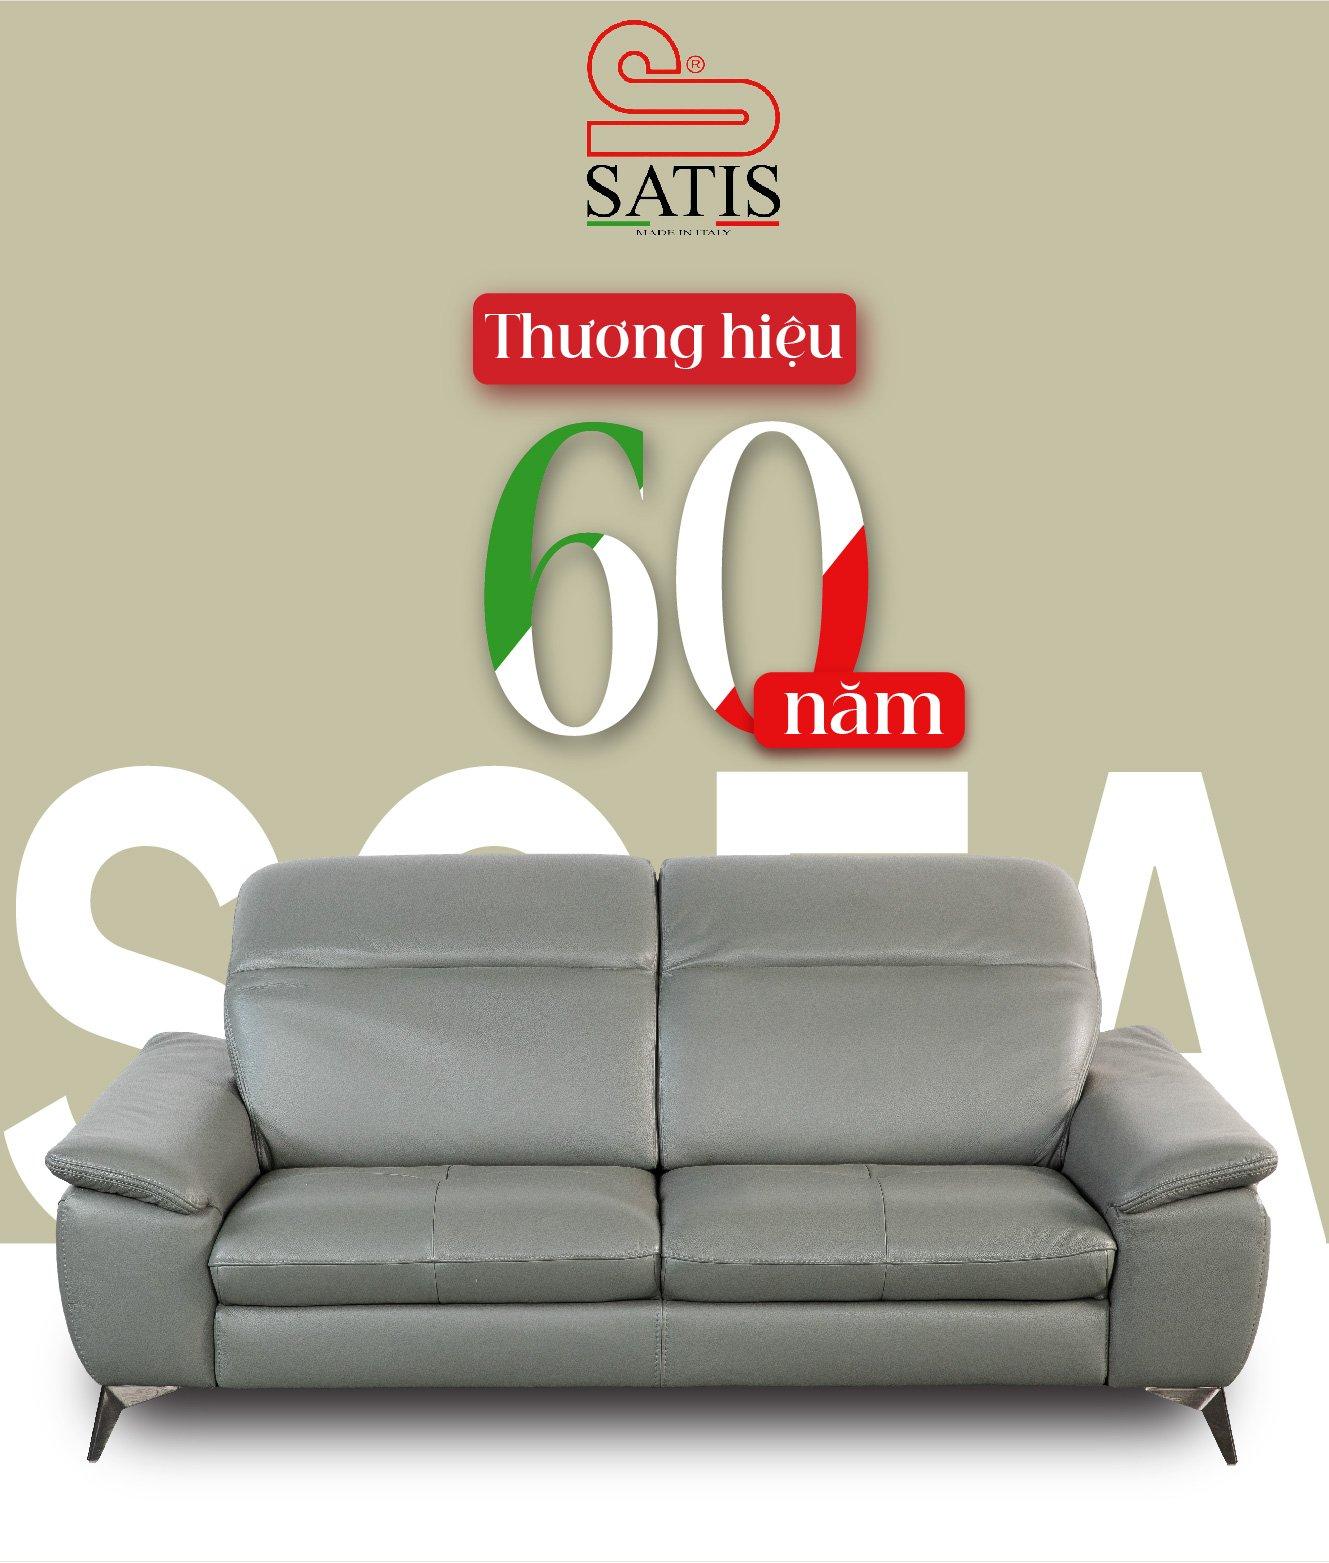 Sofa Satis